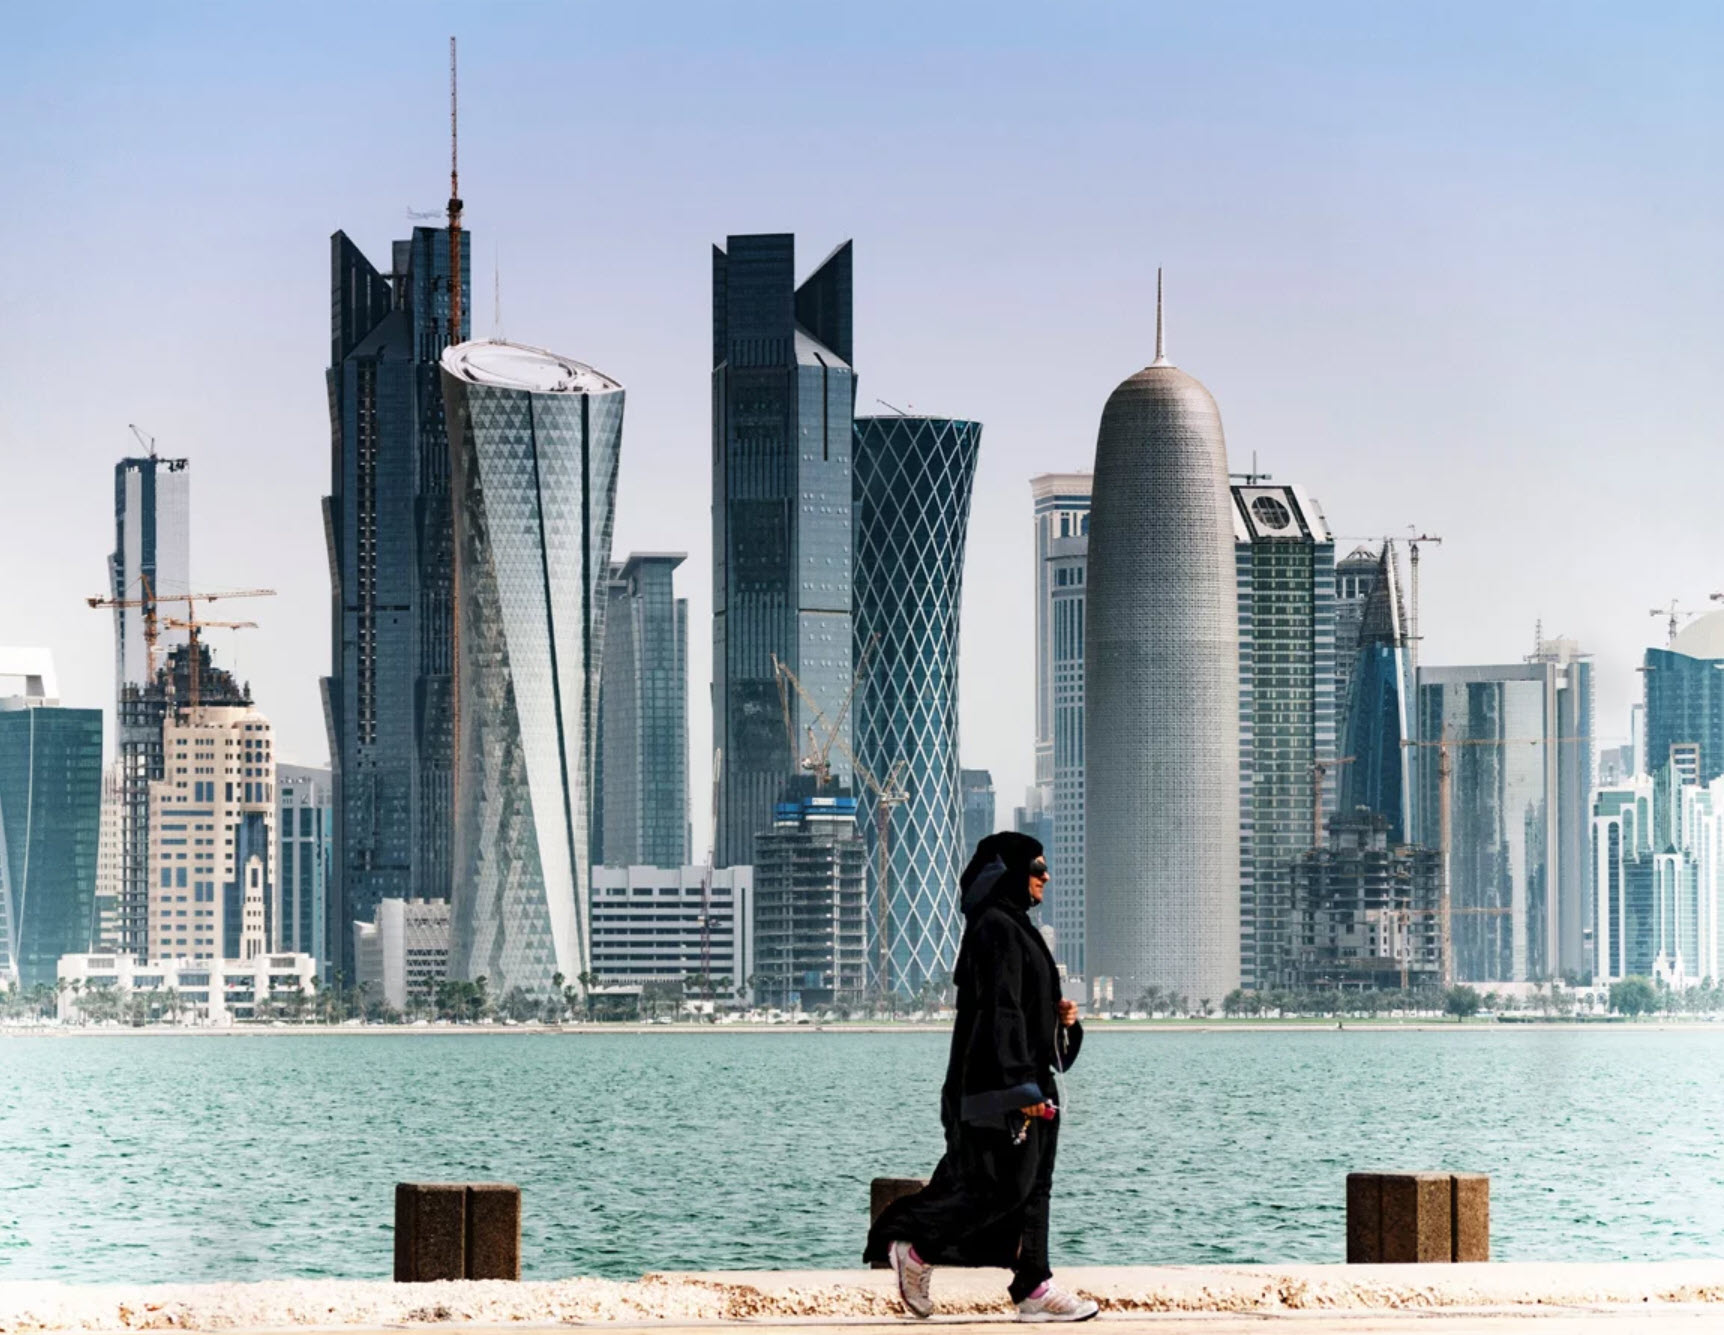 Саудовская Аравия может ввести подоходный налог и распродать госактивы